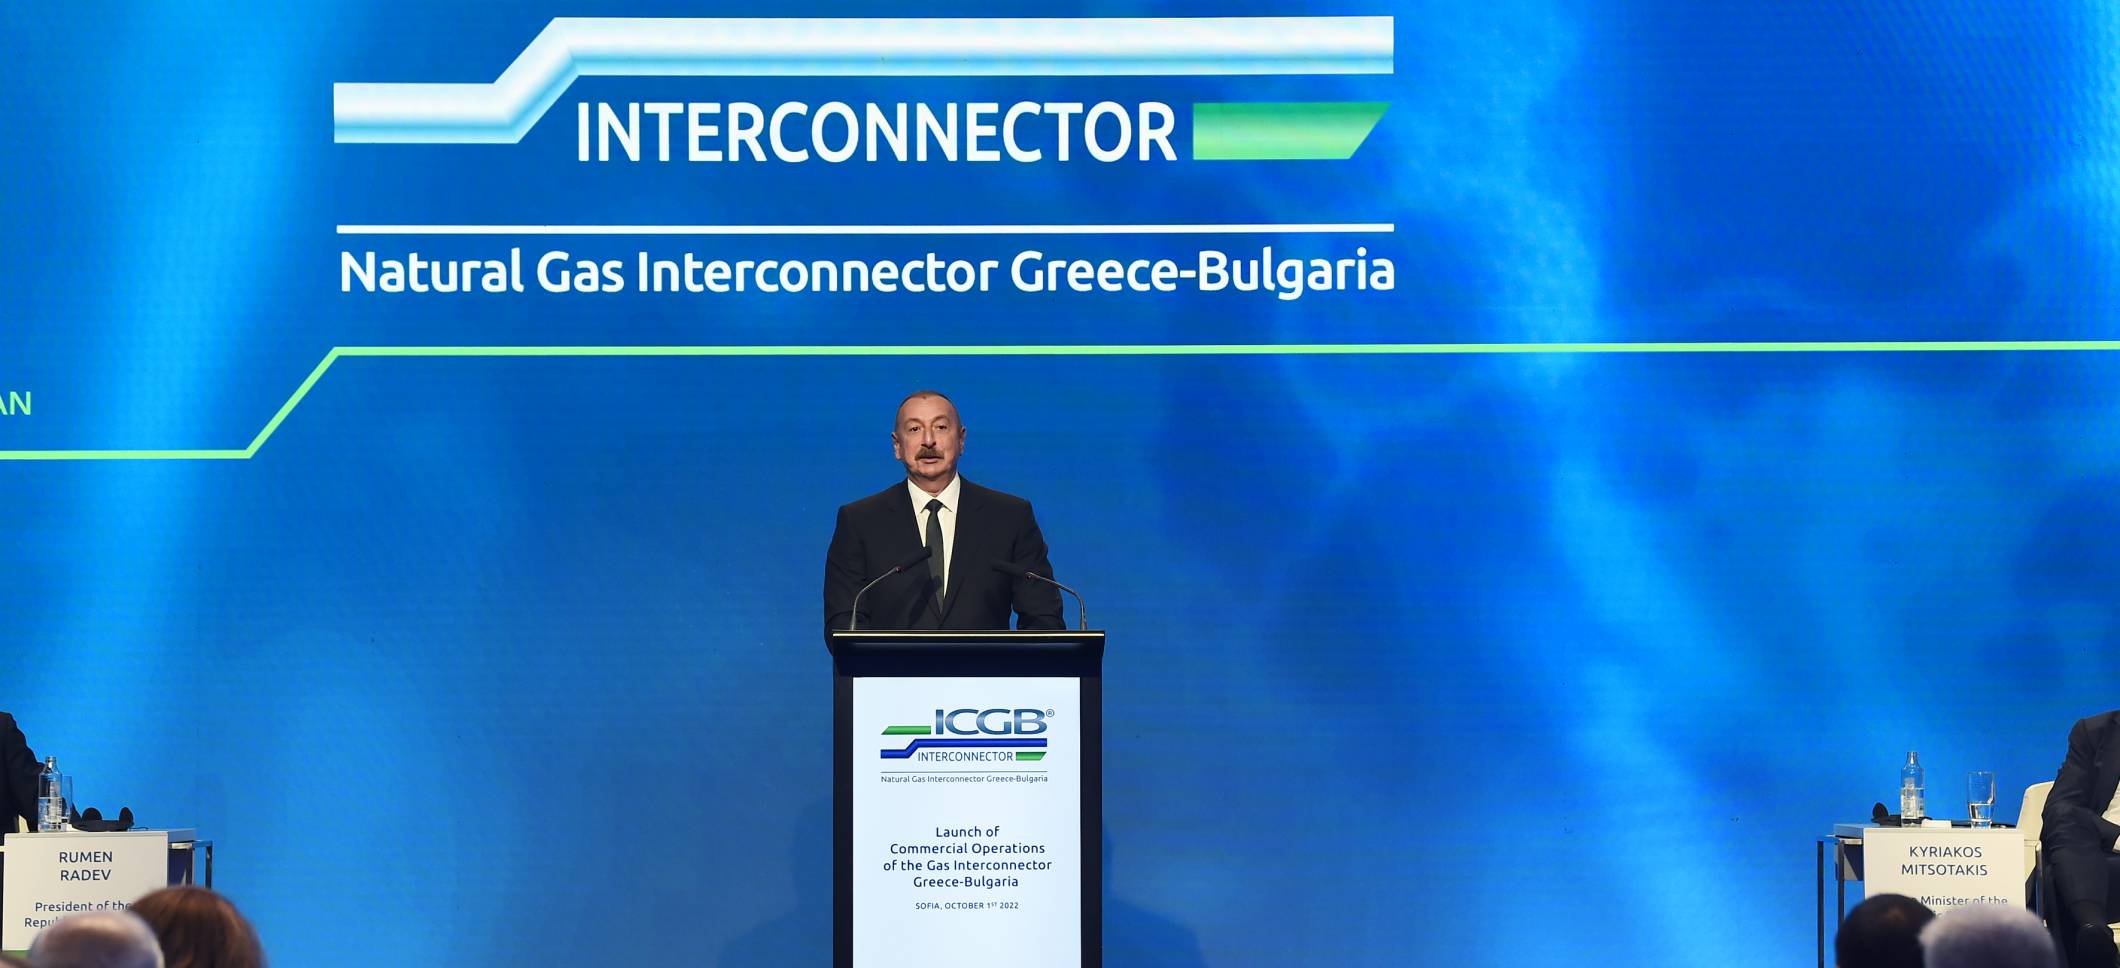 Ильхам Алиев принял участие в церемонии открытия газового интерконнектора Греция-Болгария в Софии